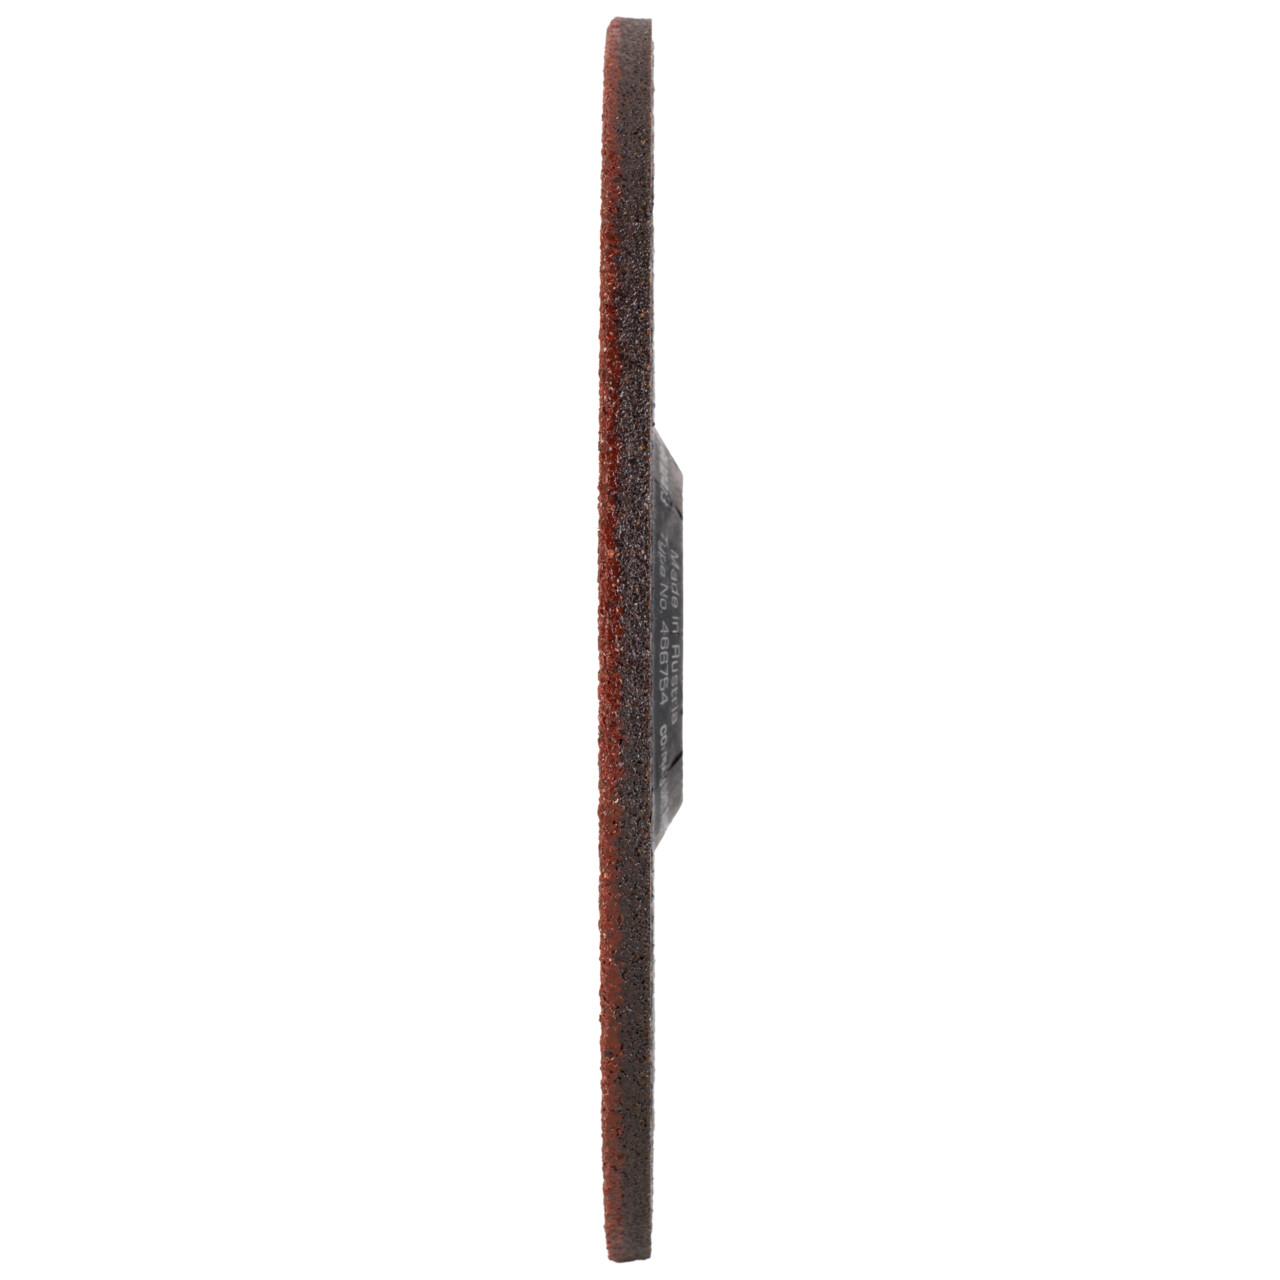 Tyrolit Slijpschijf DxUxH 115x7x22,23 3in1 voor staal en roestvast staal en gietijzer, vorm: 27 - offset uitvoering, Art. 466744